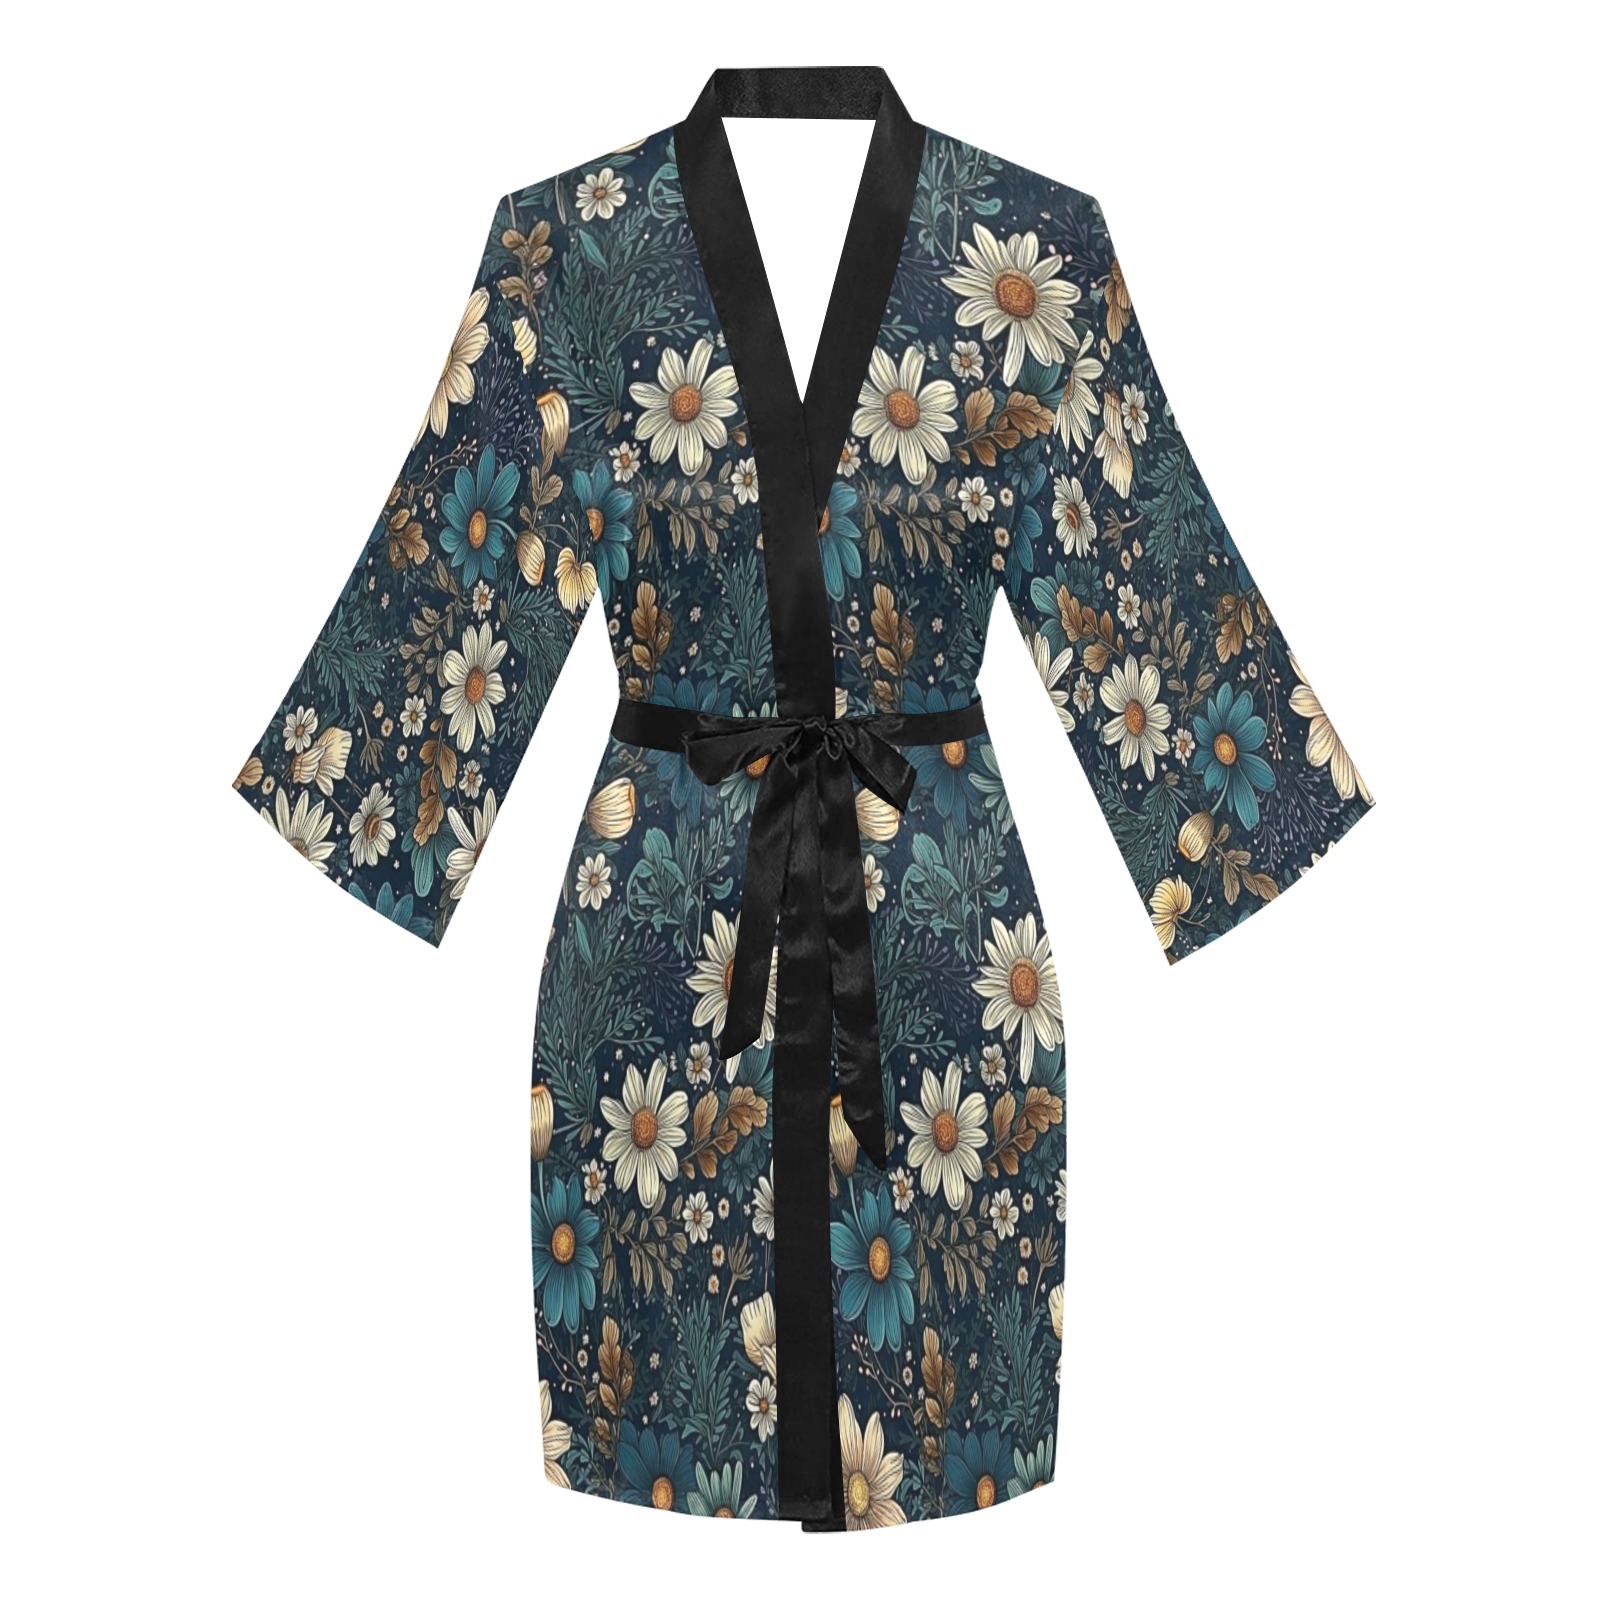 VINTAGE 01 Long Sleeve Kimono Robe